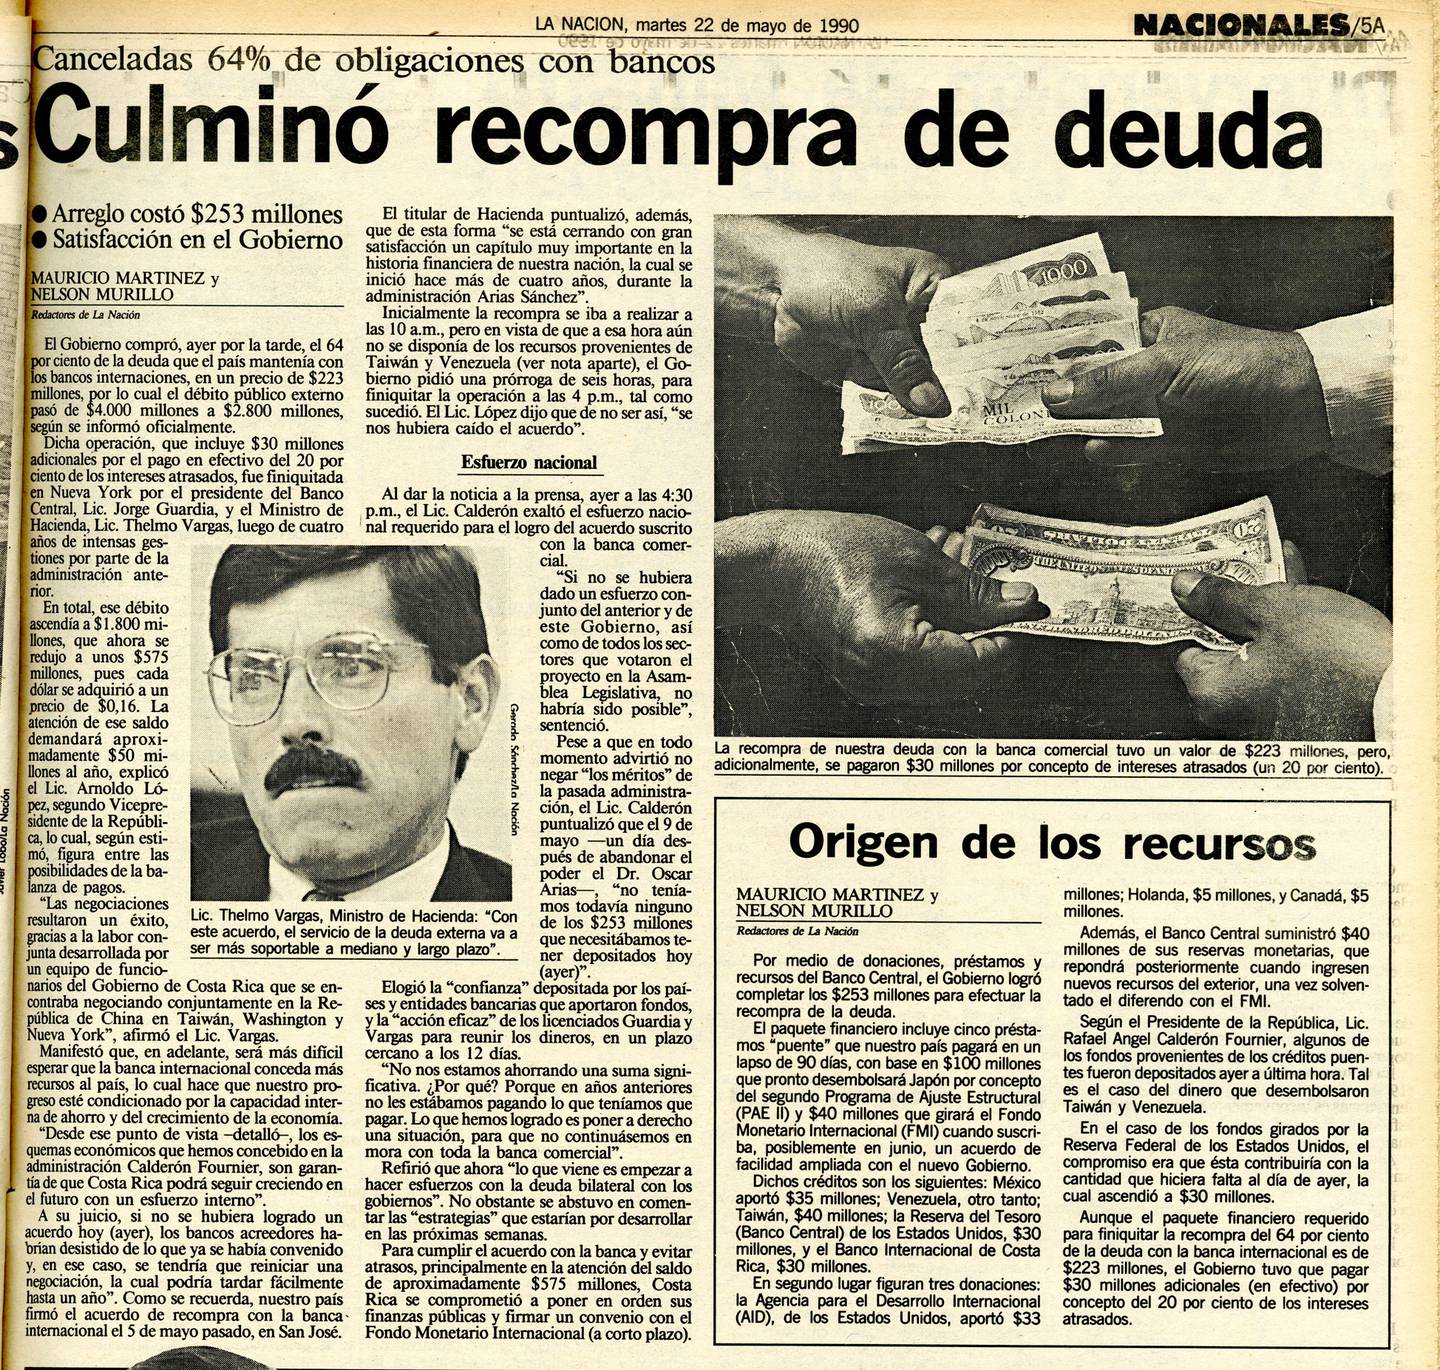 Después de casi nueve años desde caer en moratoria, Costa Rica cerró la recompra de la deuda. En ese entonces la administración de José María Figueres Olsen llevaba apenas un par de semanas.